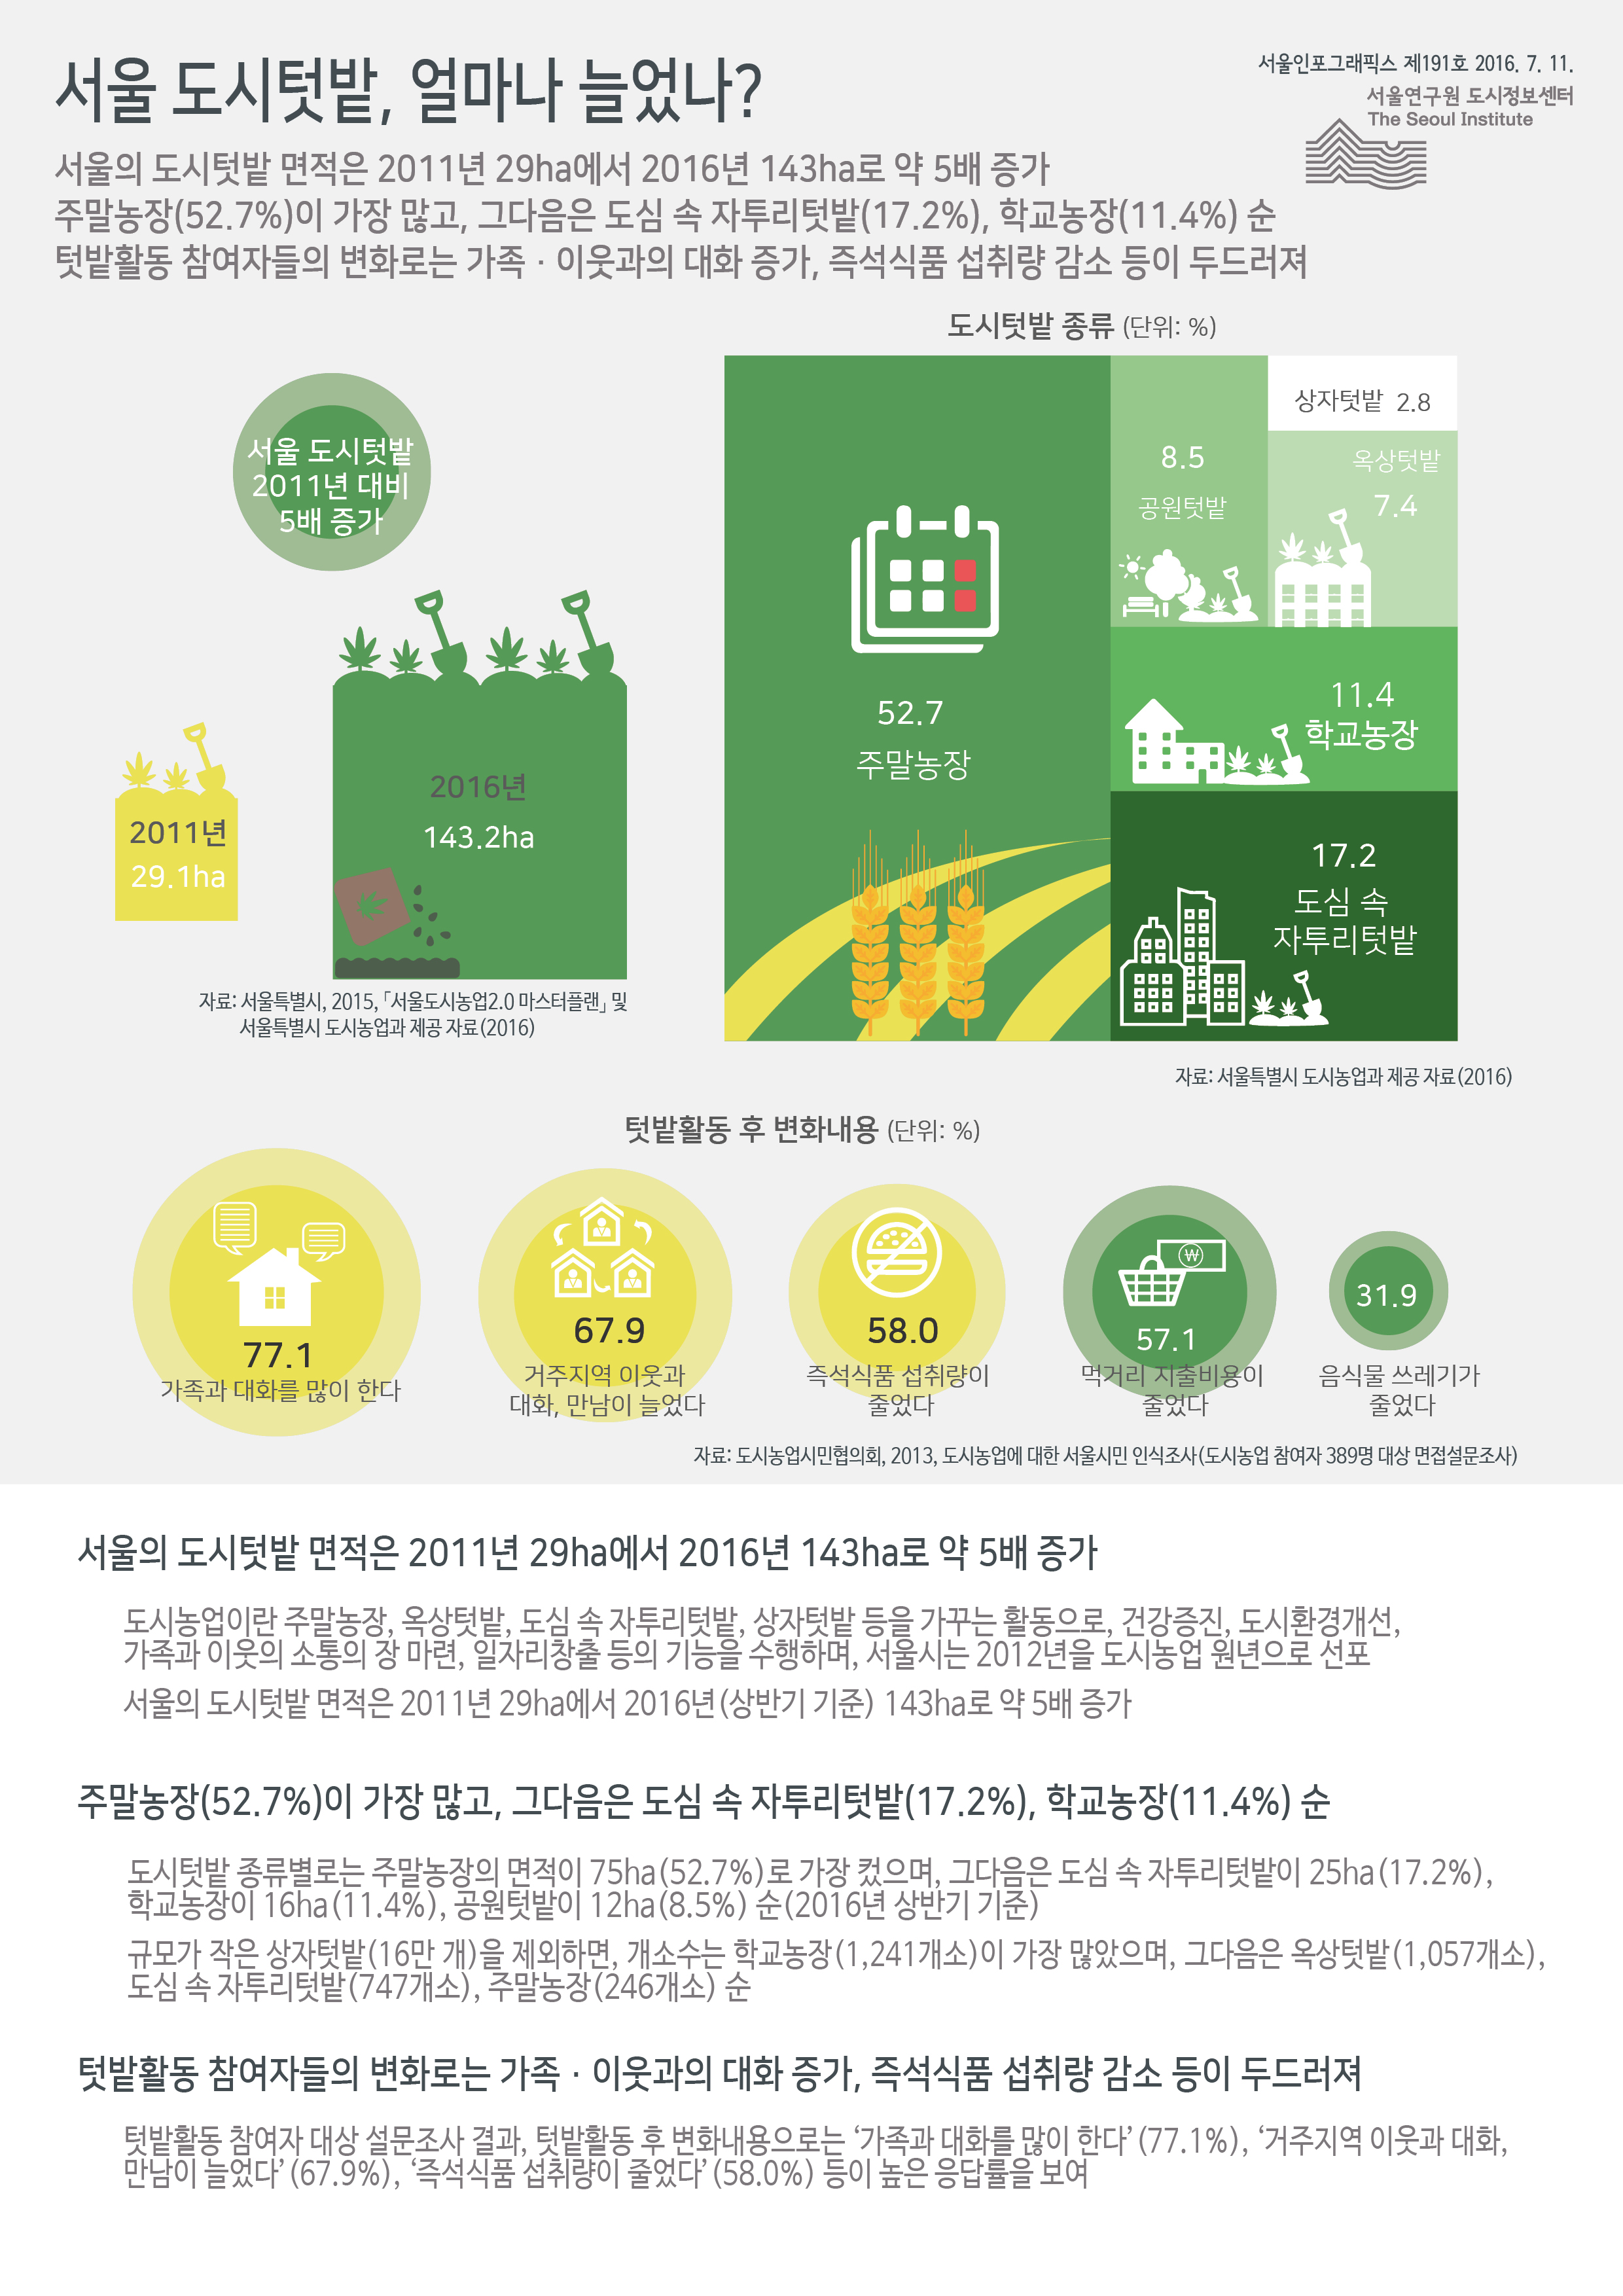 서울 도시텃밭, 얼마나 늘었나? 서울인포그래픽스 제191호 2016년 7월 11일 서울의 도시텃밭 면적은 2011년 29ha에서 2016년 143ha로 약 5배 증가함. 주말농장이 52.7%로 가장 많고, 그다음은 도심 속 자투리텃밭이 17.2%, 학교농장 11.4% 순. 텃밭활동 참여자들의 변화로는 가족·이웃과의 대화 증가, 즉석식품 섭취량 감소 등이 두드러짐으로 정리 될 수 있습니다. 인포그래픽으로 제공되는 그래픽은 하단에 표로 자세히 제공됩니다.